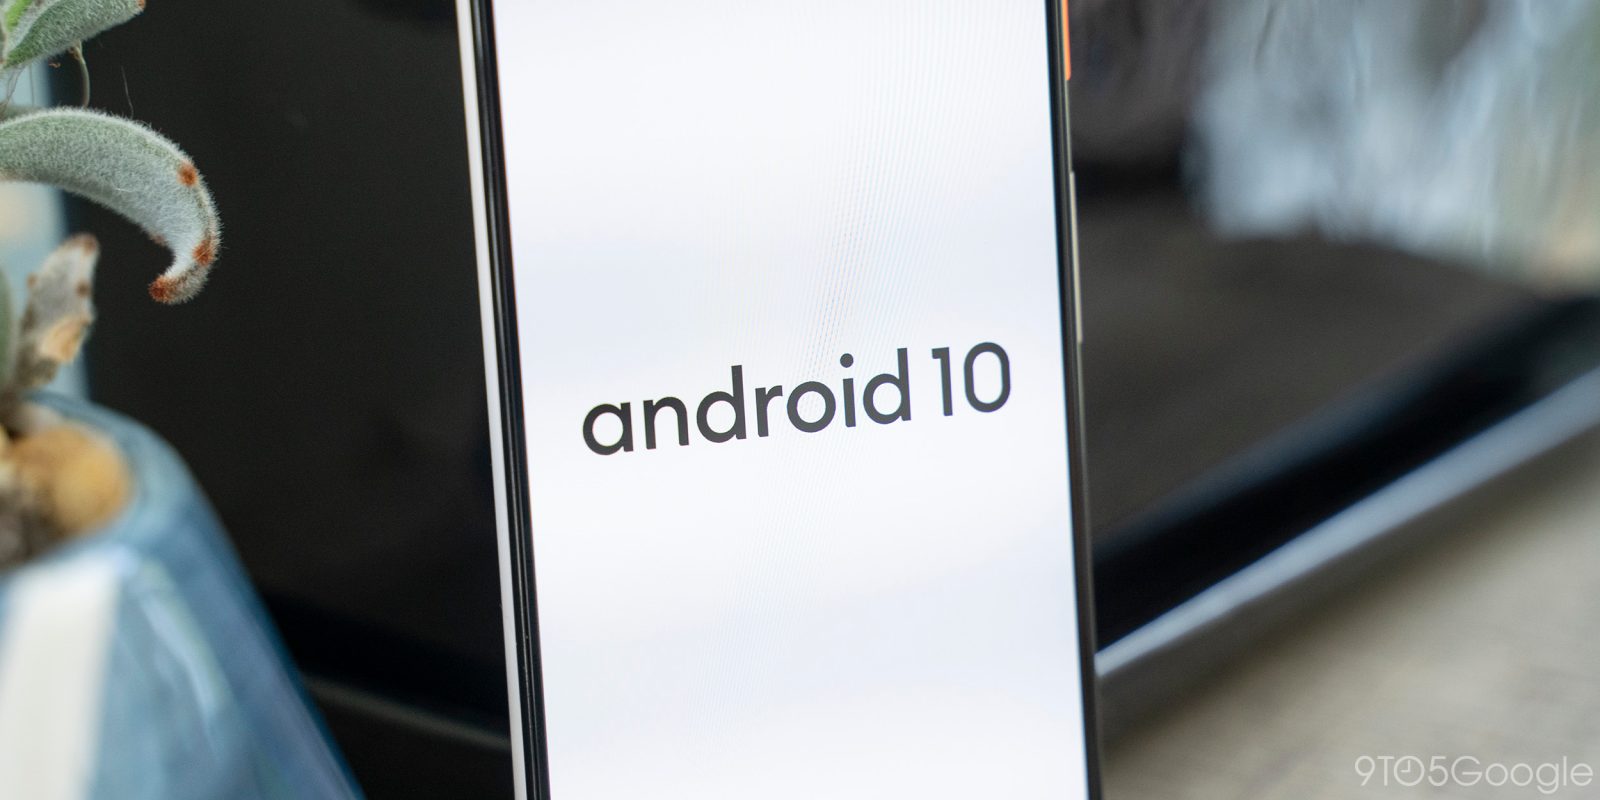 android 10 logo white